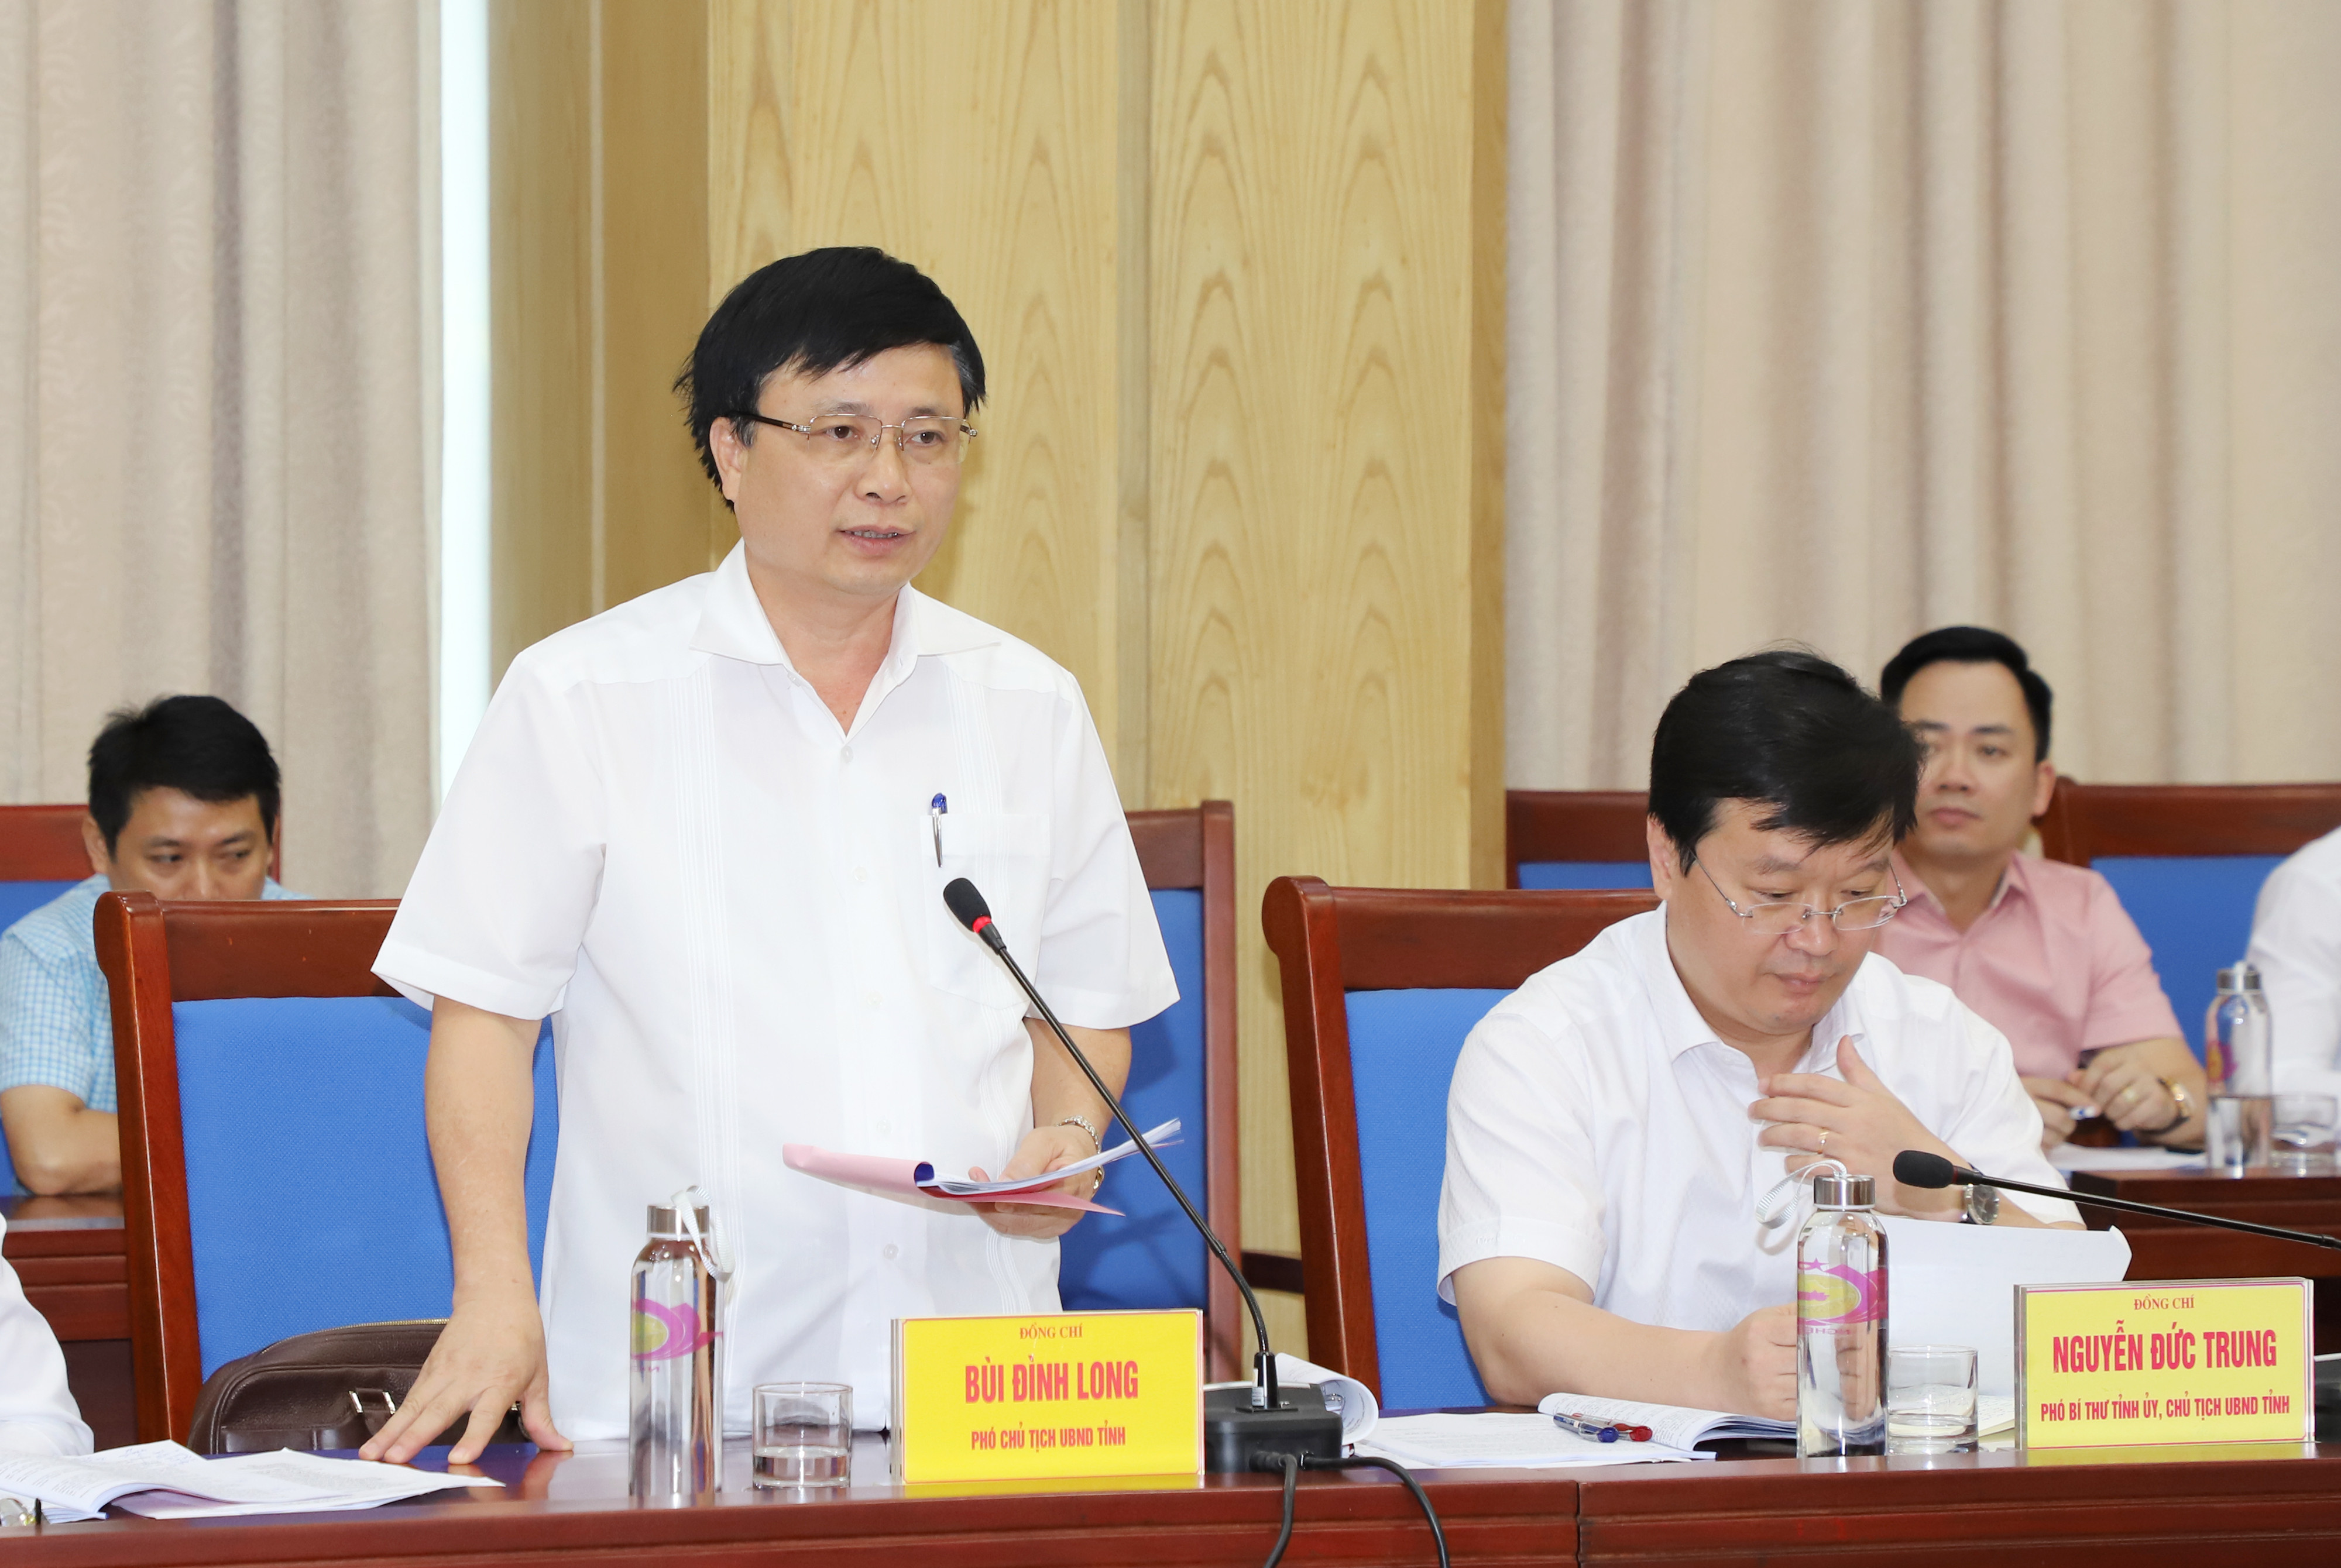 Đồng chí Bùi Đình Long - Phó Chủ tịch UBND tỉnh phát biểu tại buổi làm việc. Ảnh: Phạm Bằng